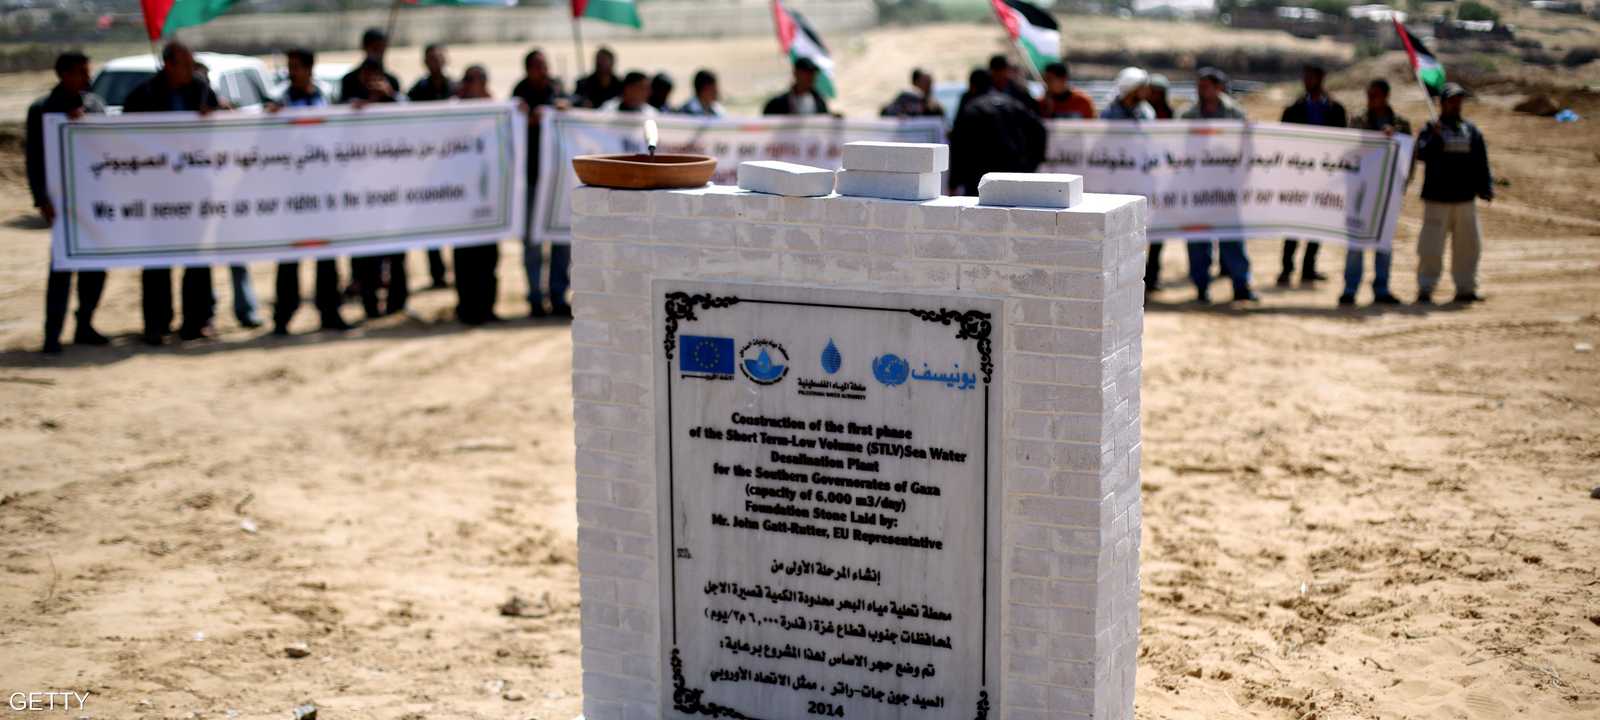 مكان إنشاء محطة تحلية المياه في غزة - 20 مارس 2014.